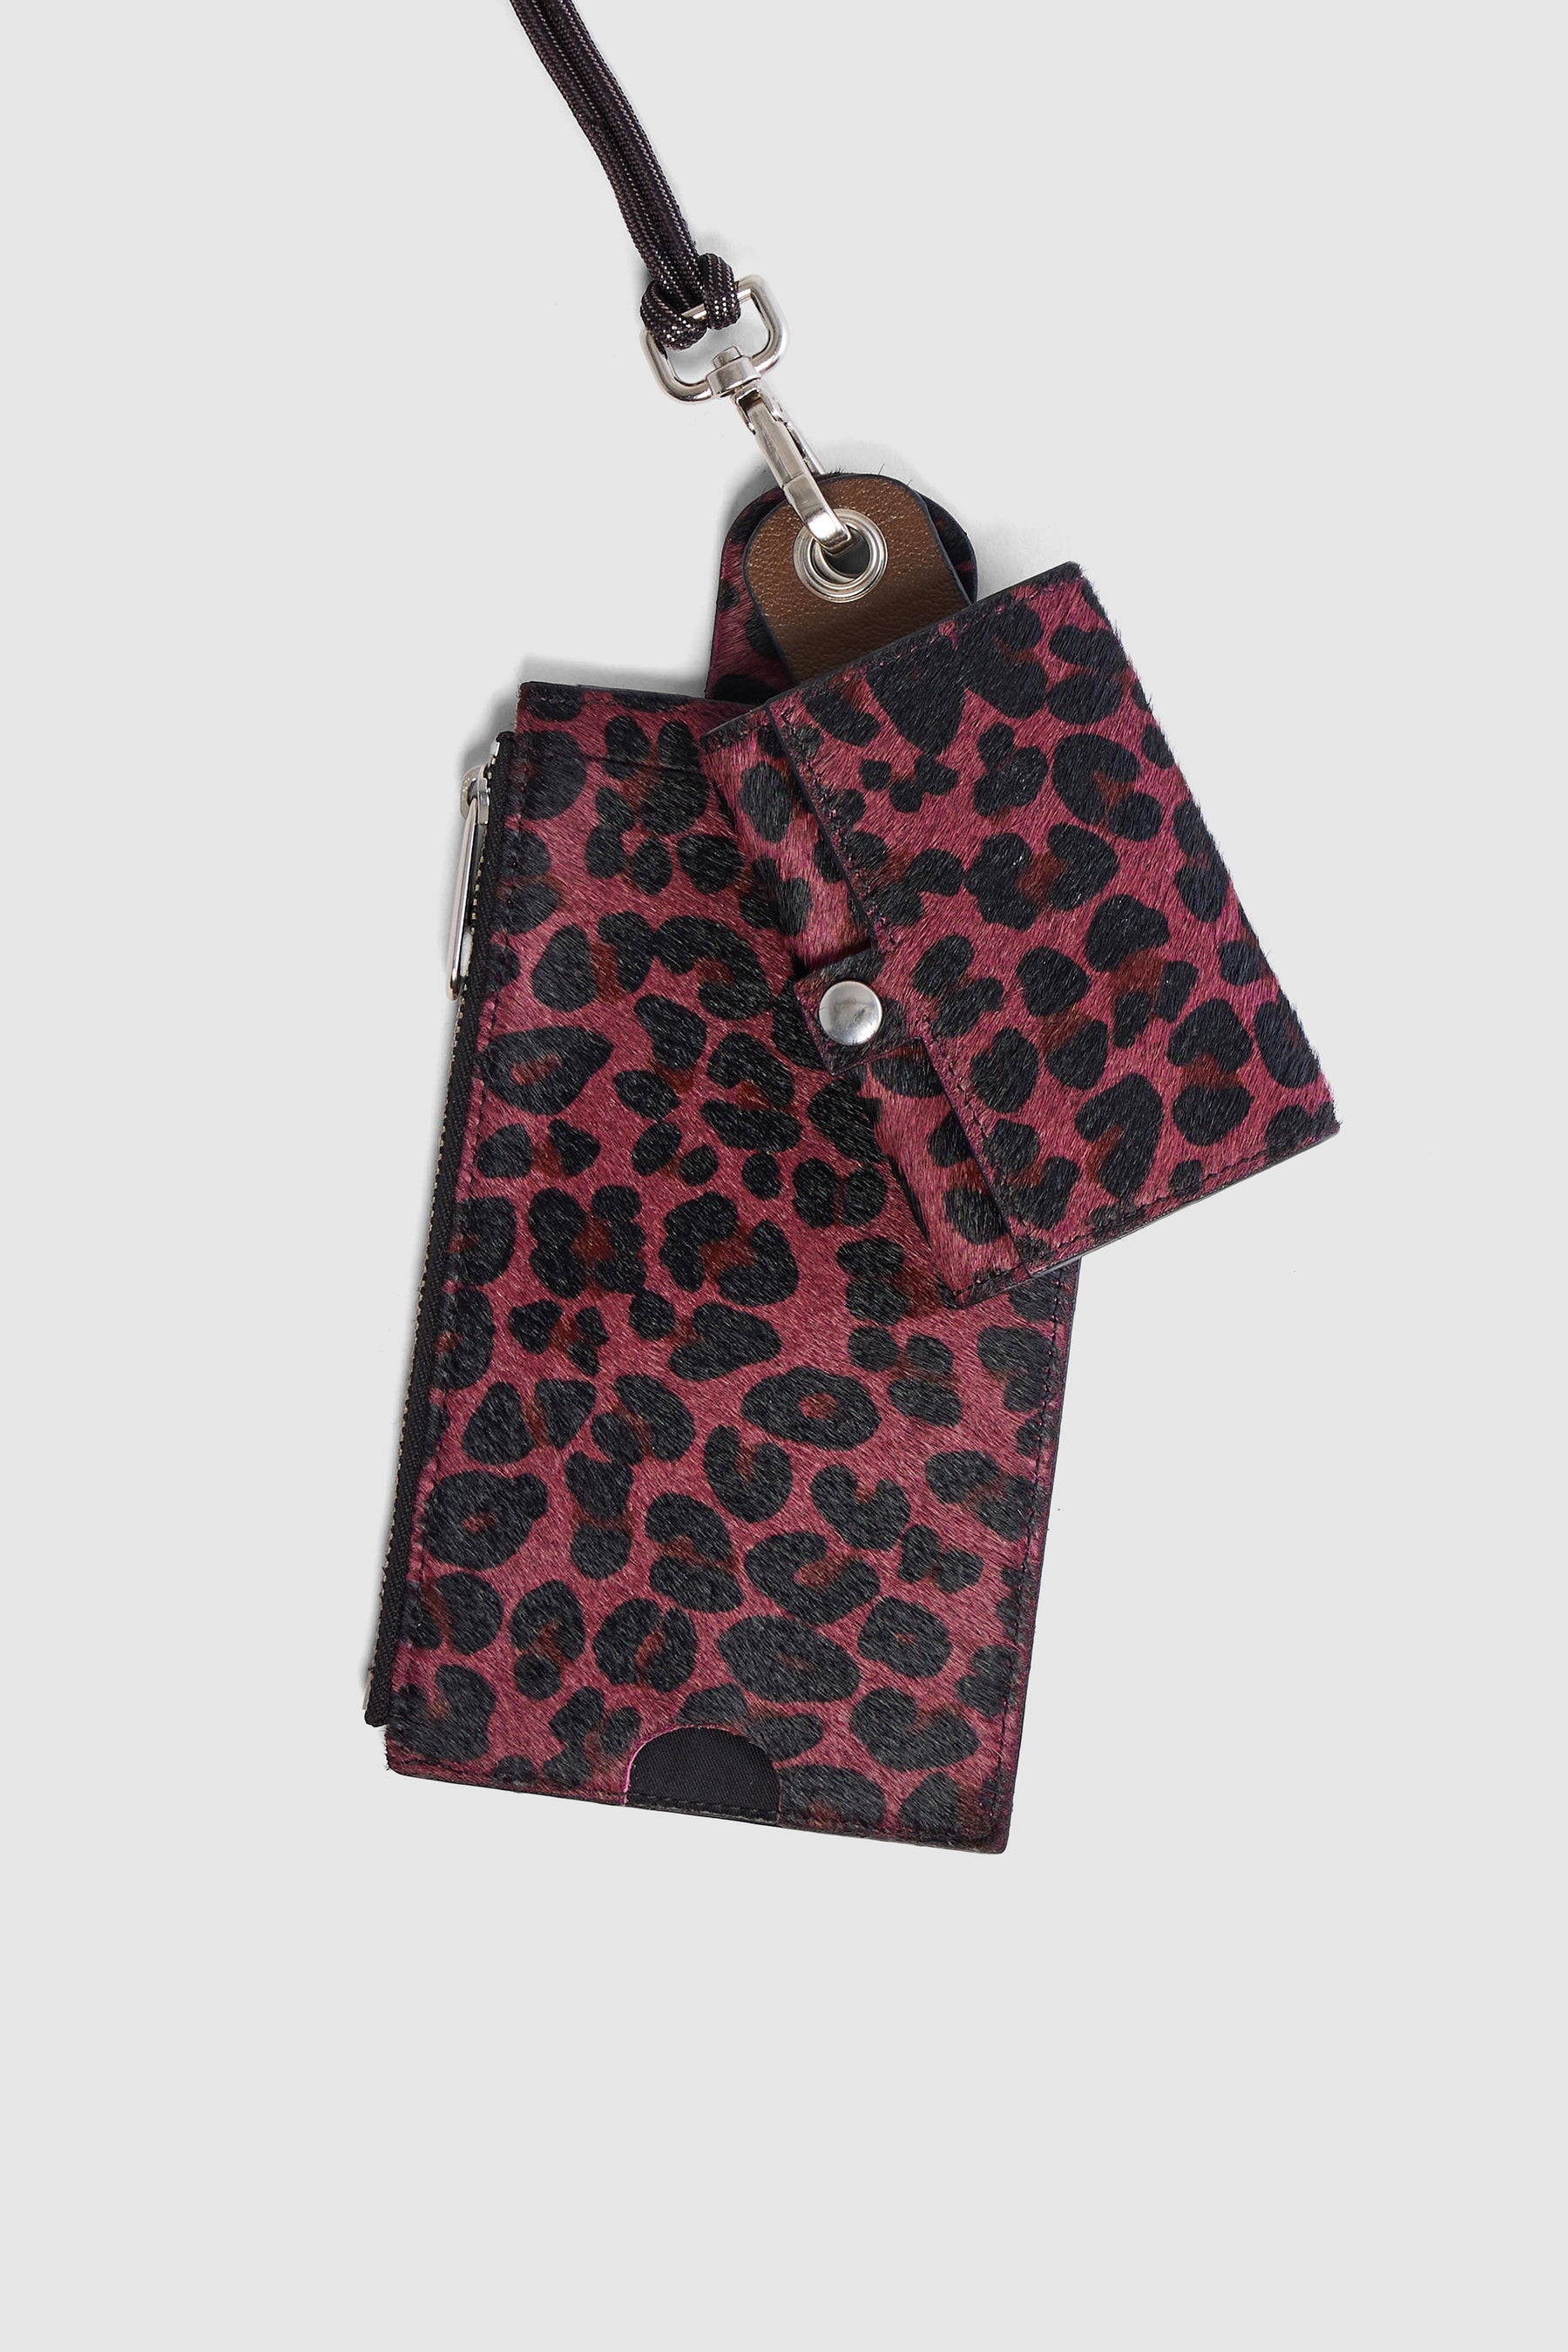 Les Minis - Large Portefeuille à cordon en cuir imprimé léopard bordeaux